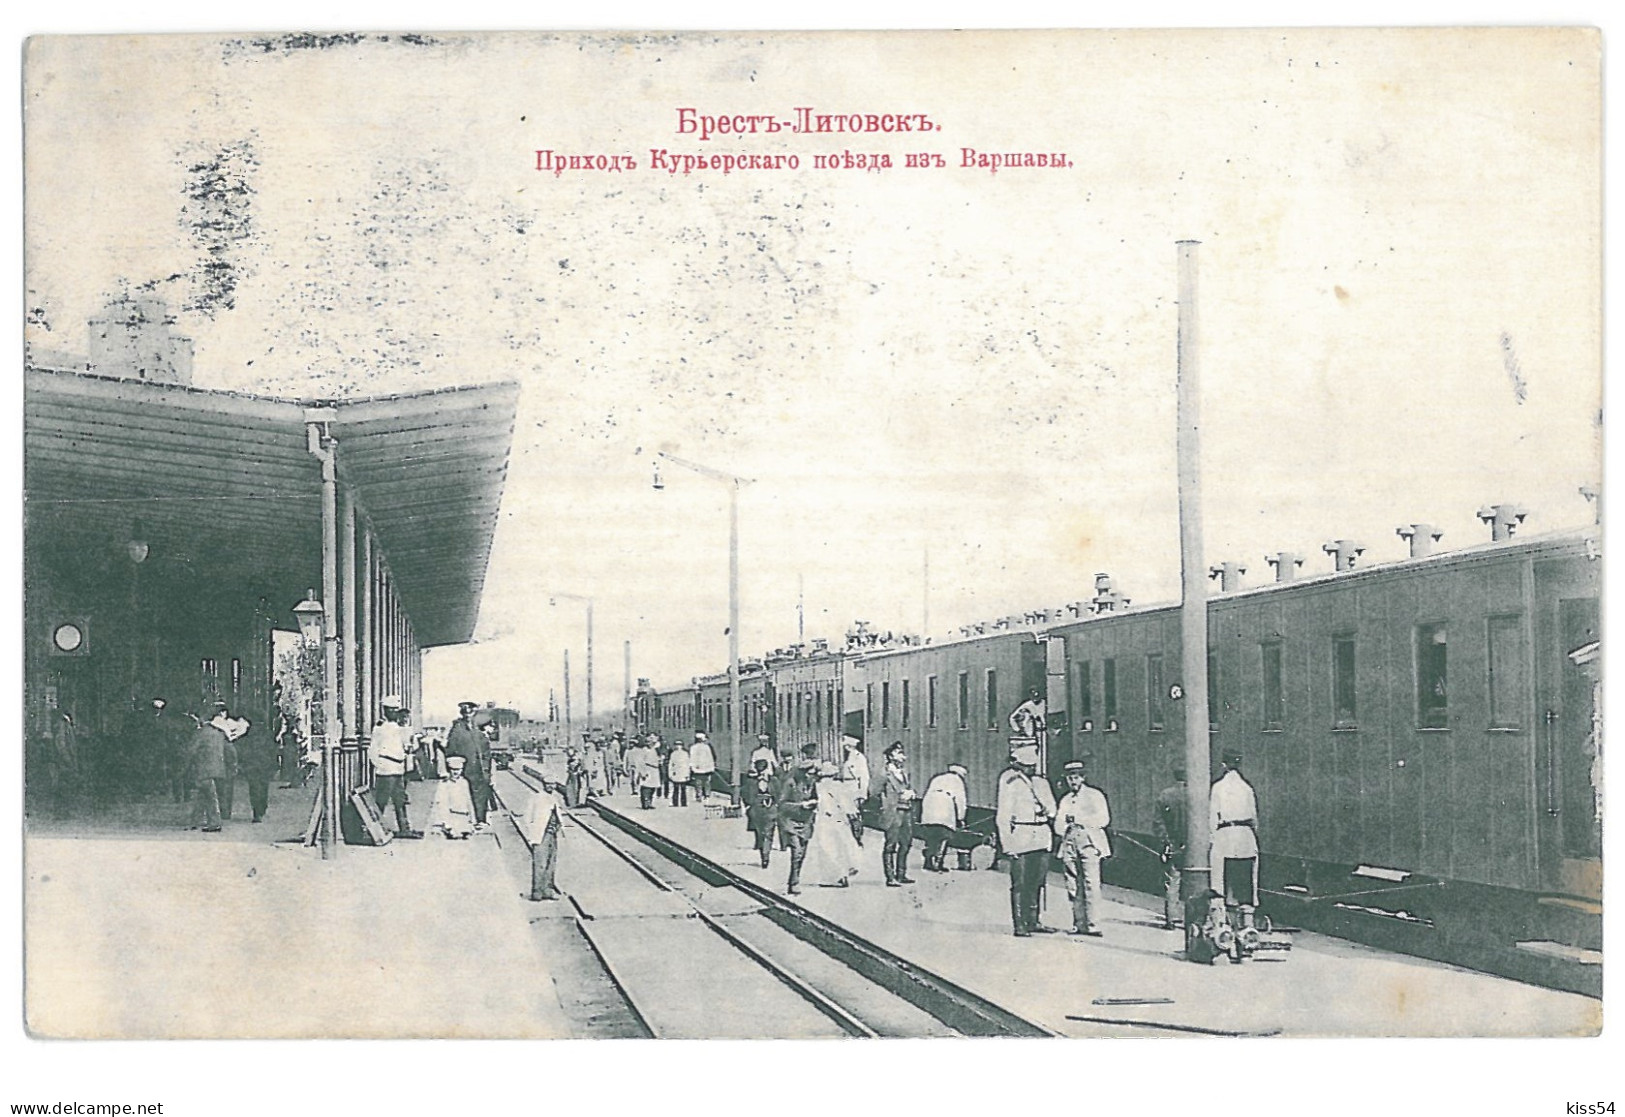 BL 29 - 15360 BREST LITOWSK, Railway Station, Belarus - Old Postcard - Used - 1911 - Belarus